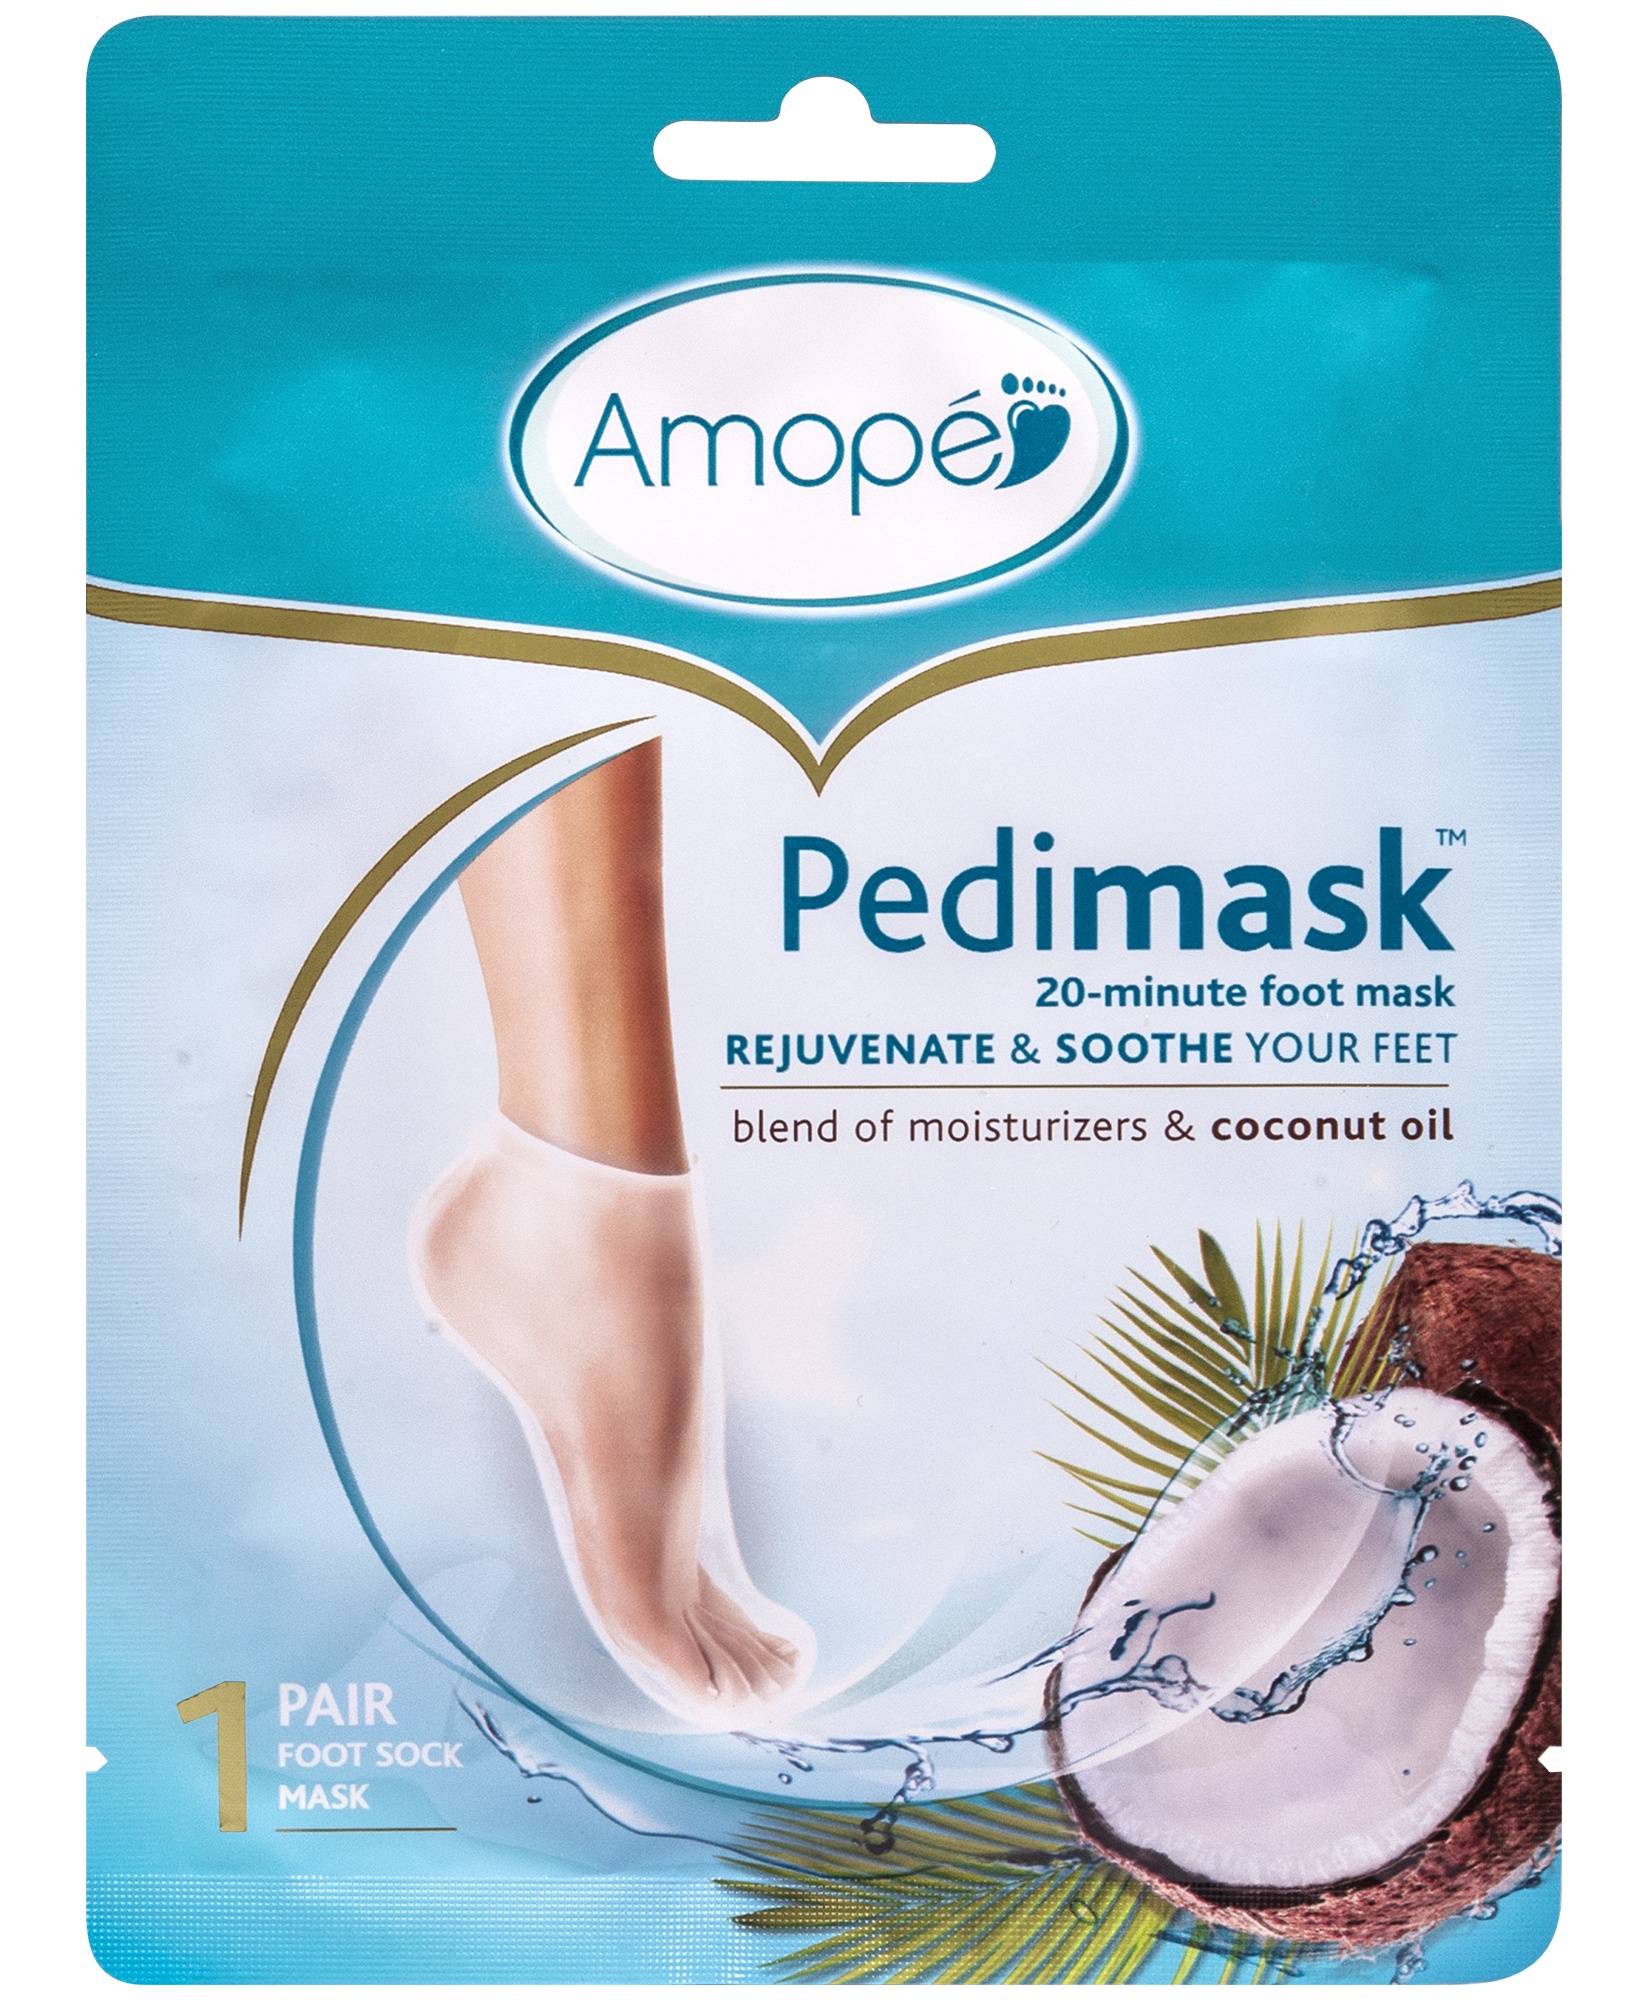 Amope Pedimask 20-minute foot mask